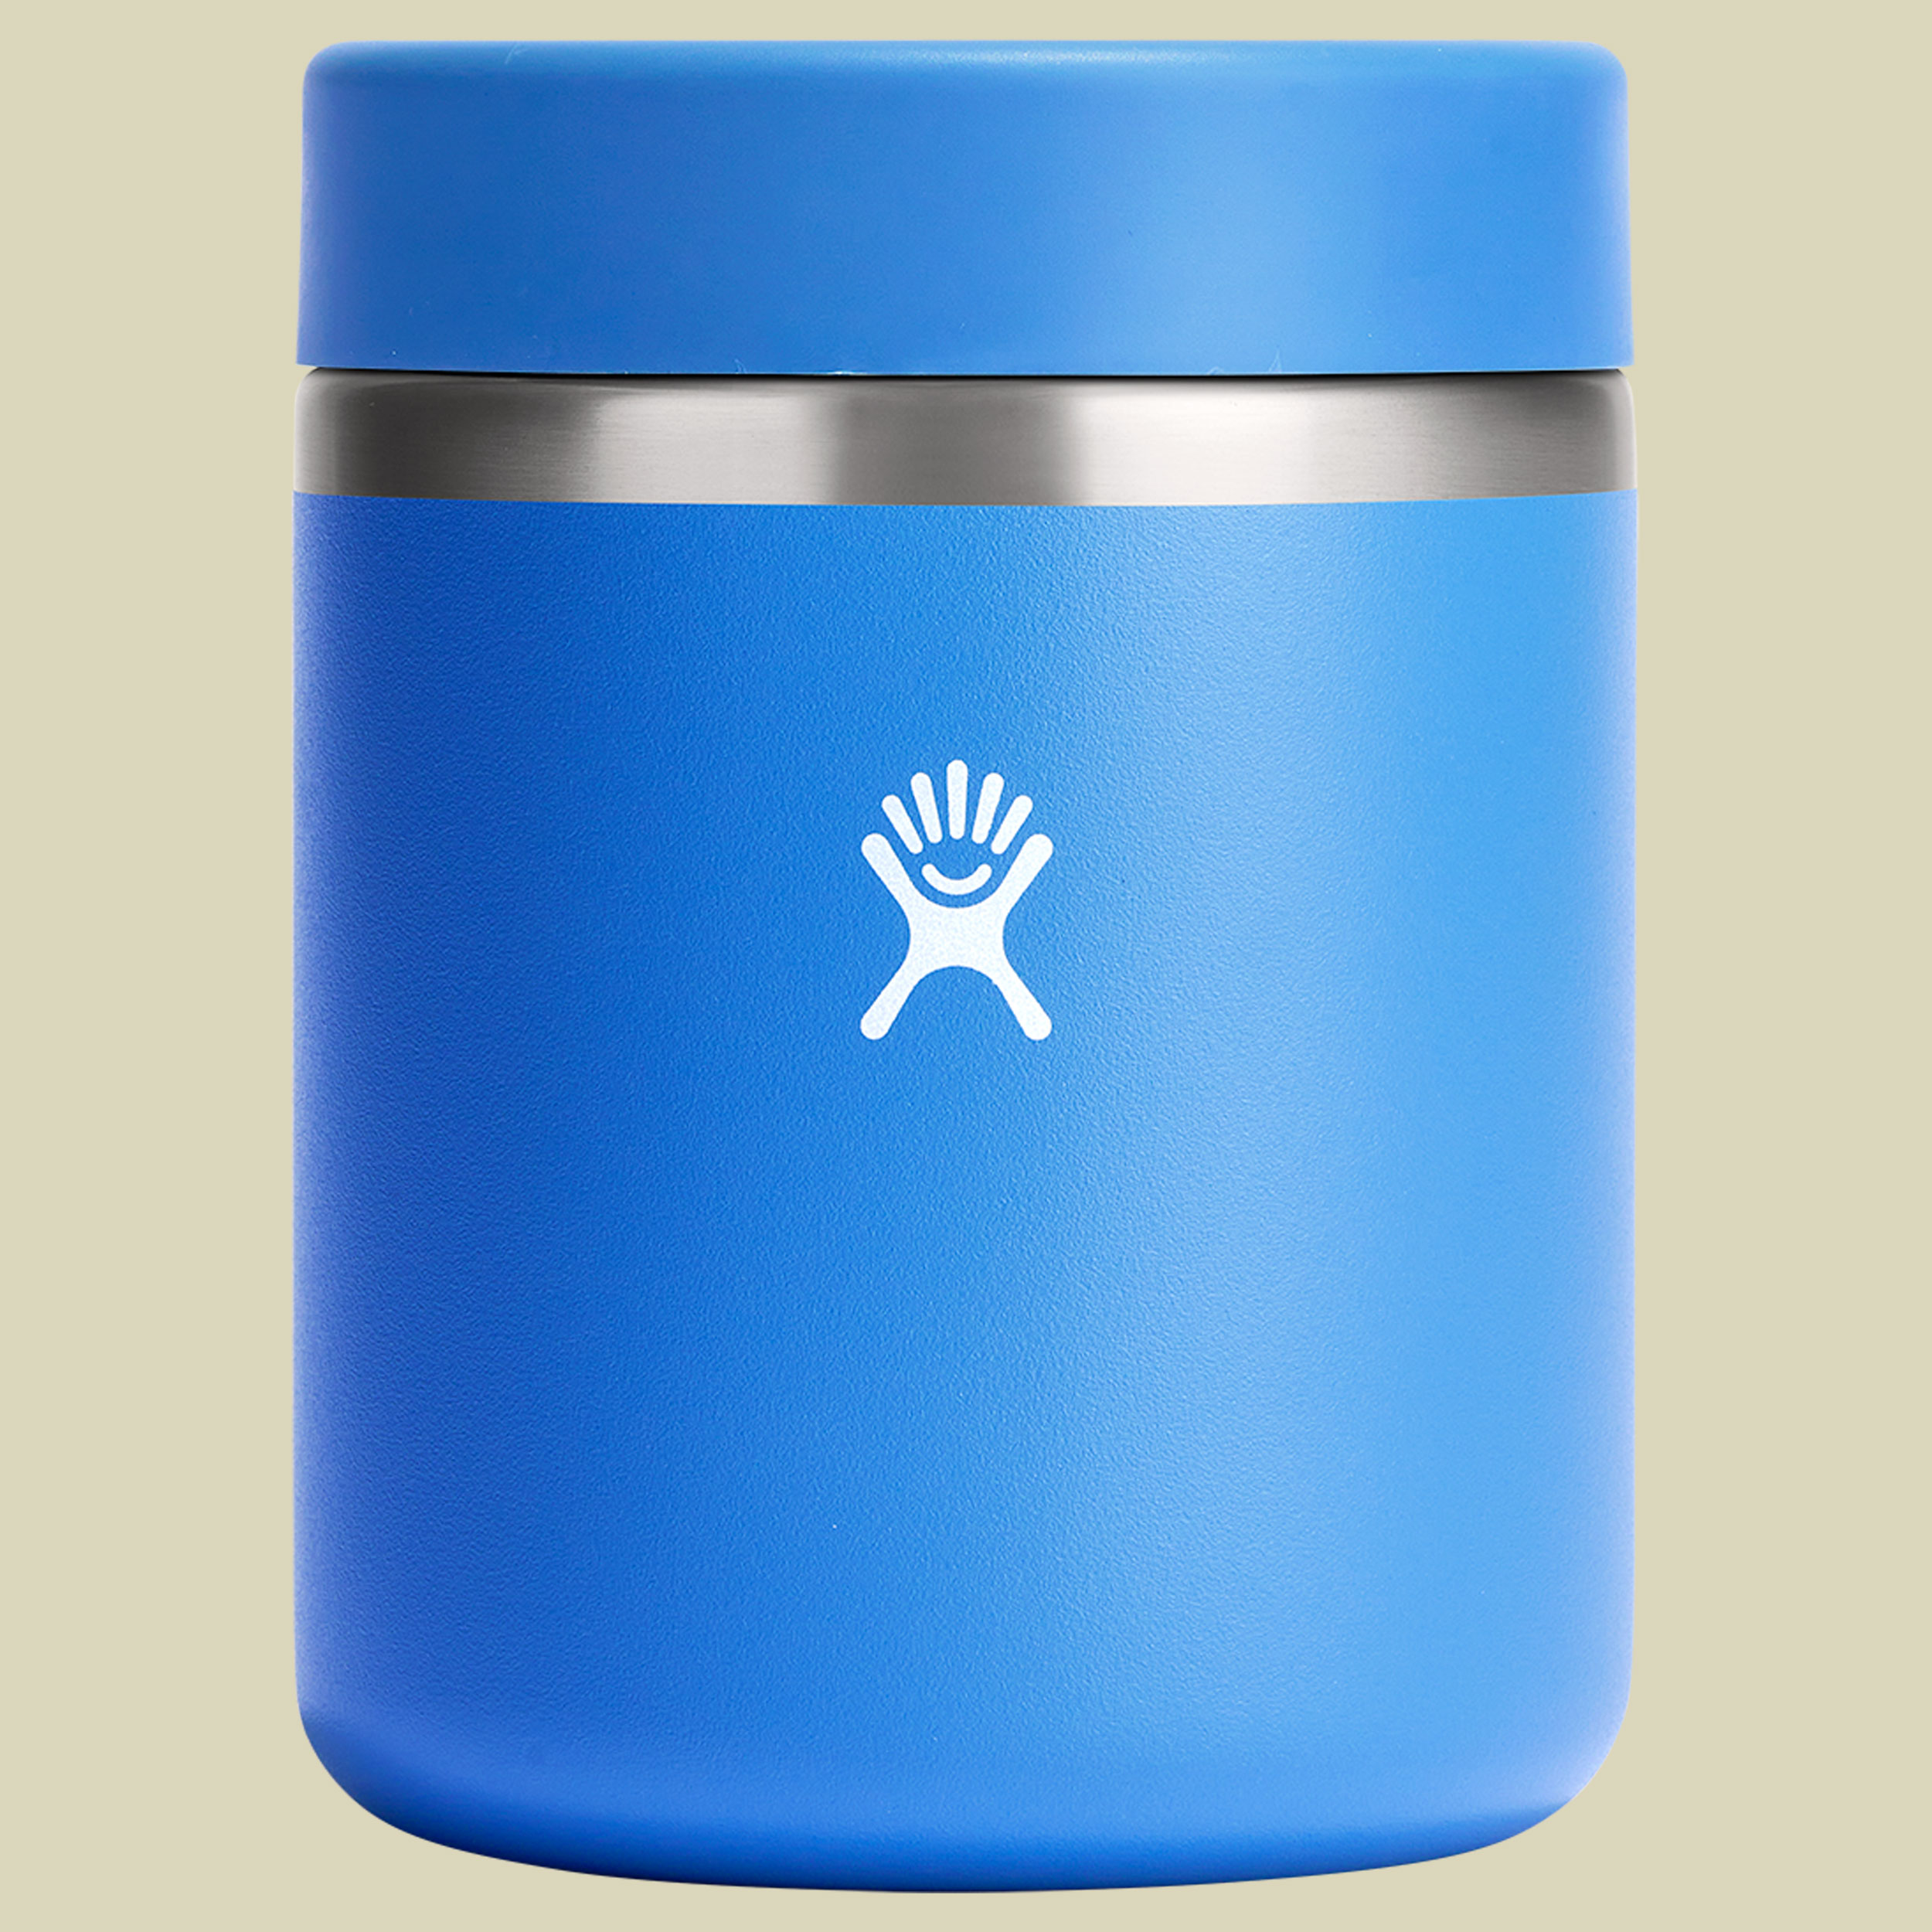 28 oz Insulated Food Jar blau 828 - Farbe blau